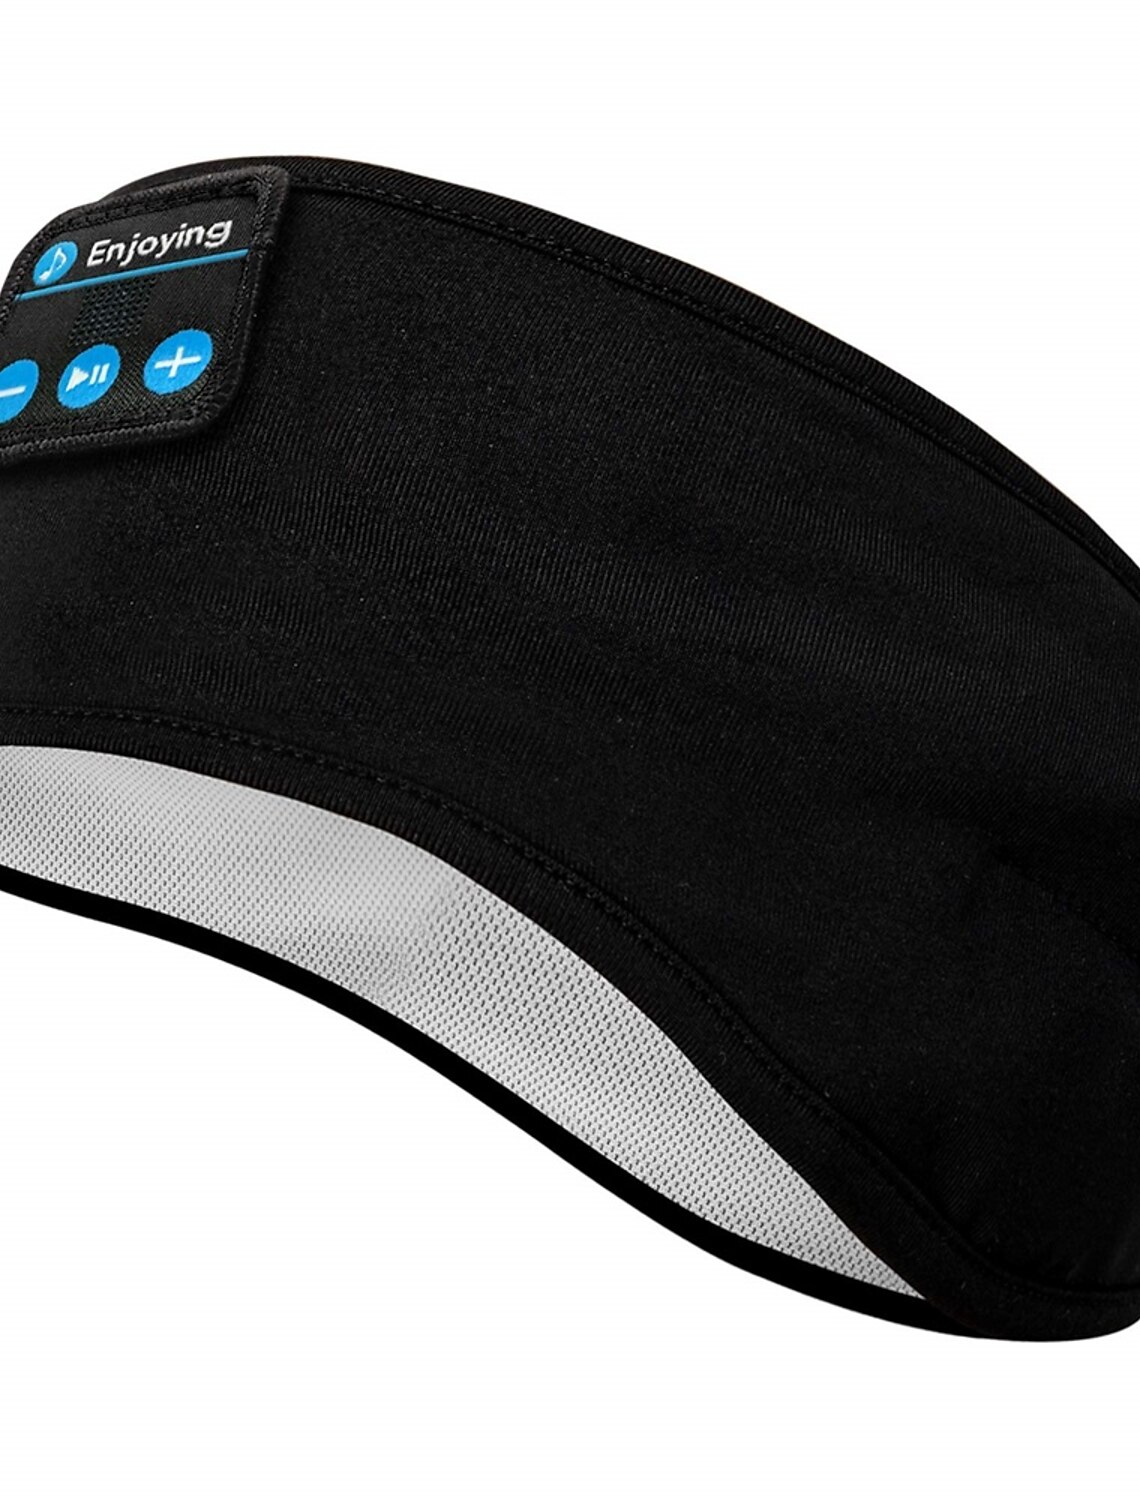 Cuffie per dormire con altoparlanti integrati per allenamento Upgrage morbidi e senza fili corsa yoga viaggi in aria G-X11 auricolari Bluetooth 